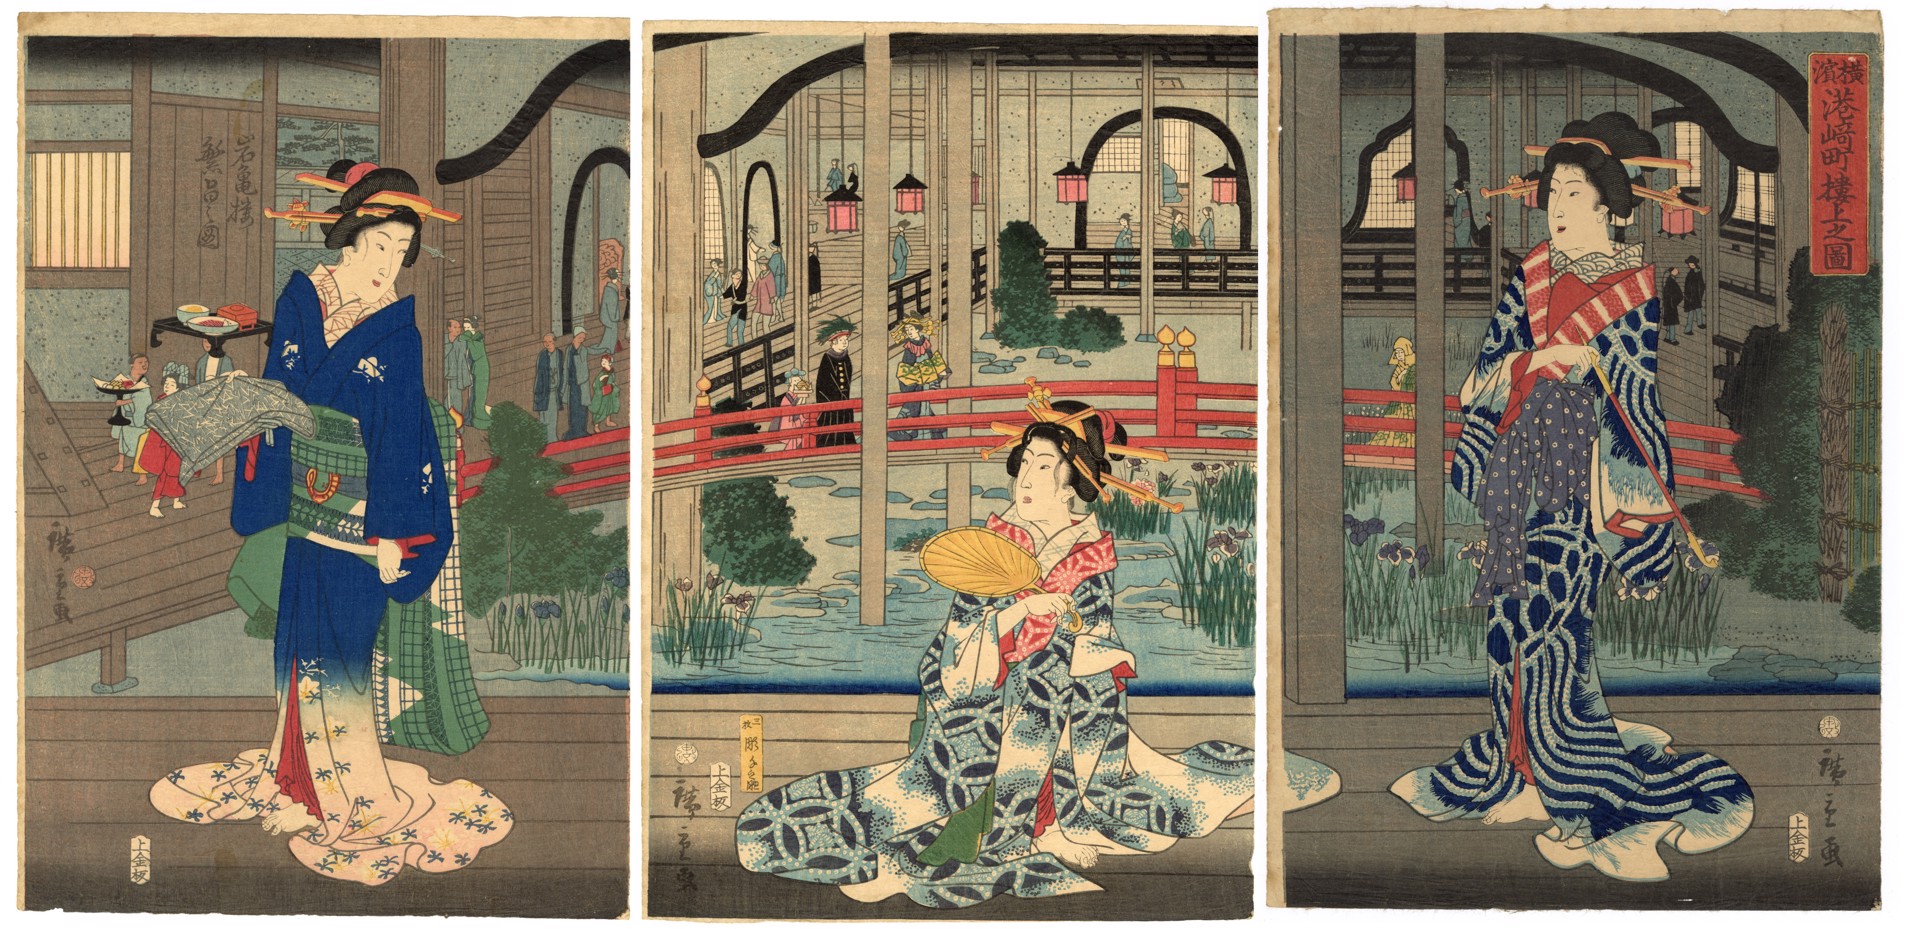 The Prosperous Gankiro Teahouse in the Building at Miyozaki-cho, Yokohama. by Hiroshige II